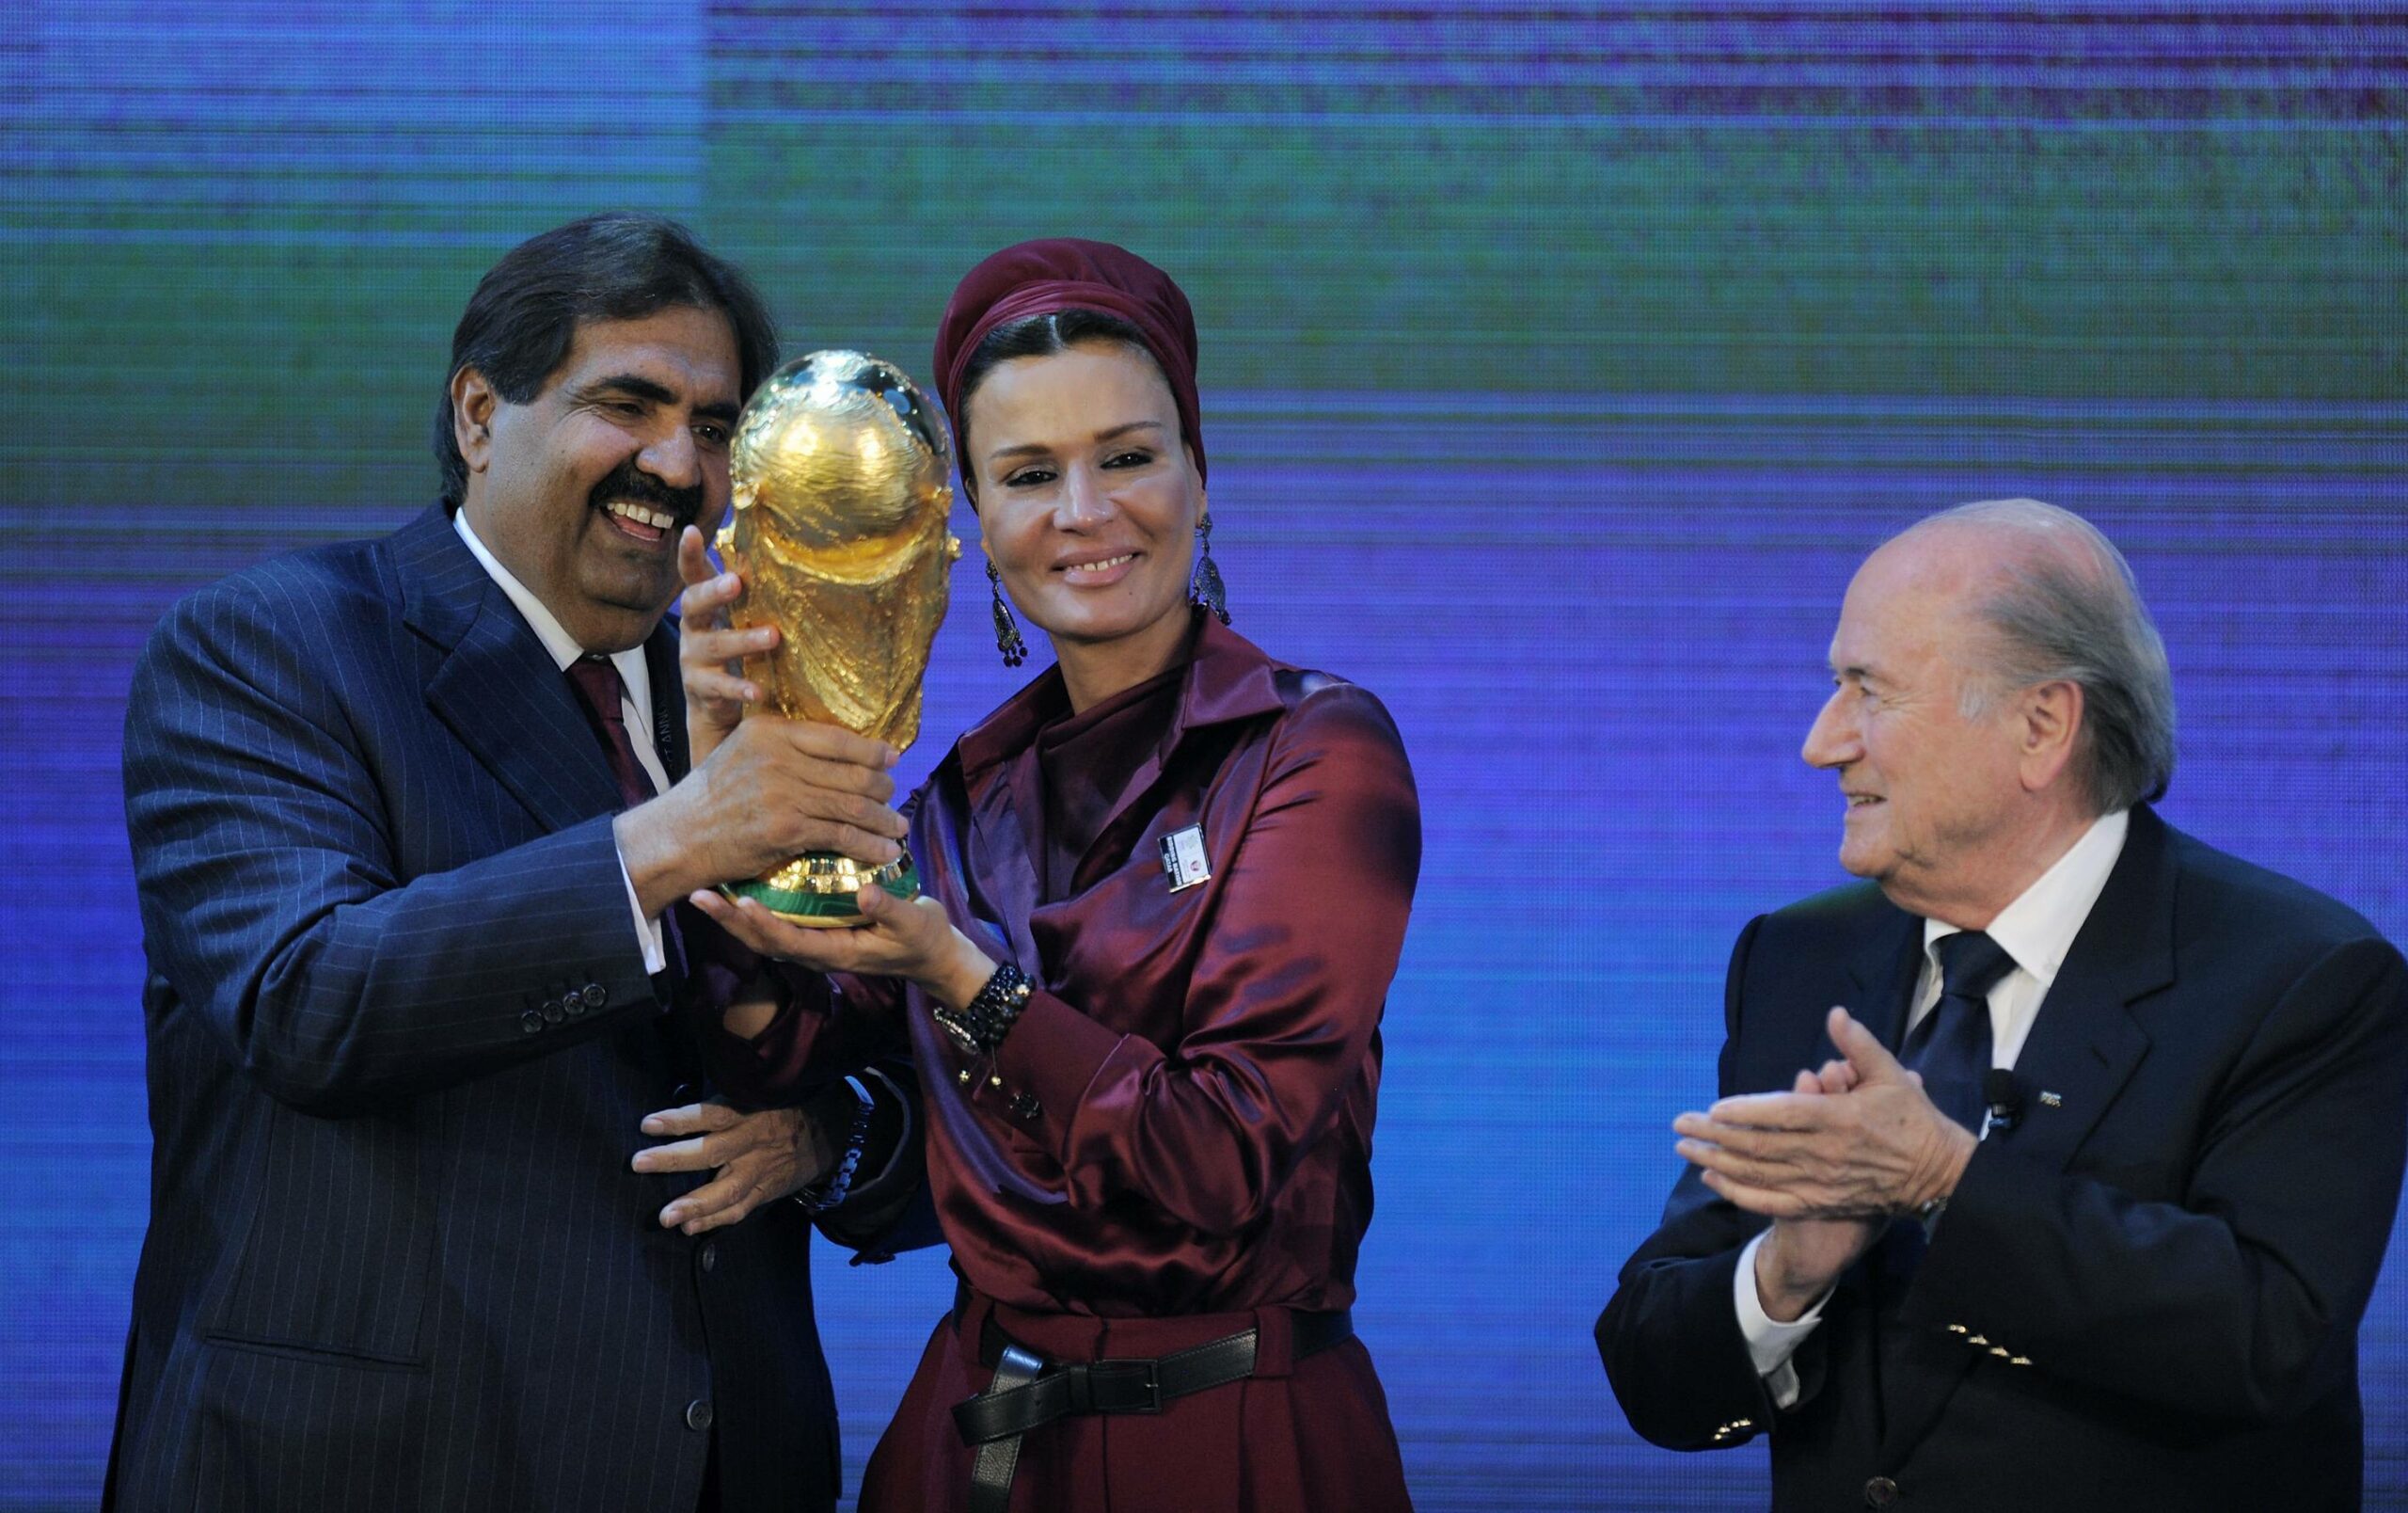 Der Emir Hamad bin Khalifa Al Thani und seine Frau Moza bint Nasser nehmen den WM-Pokal von Sepp Blatter entgegen